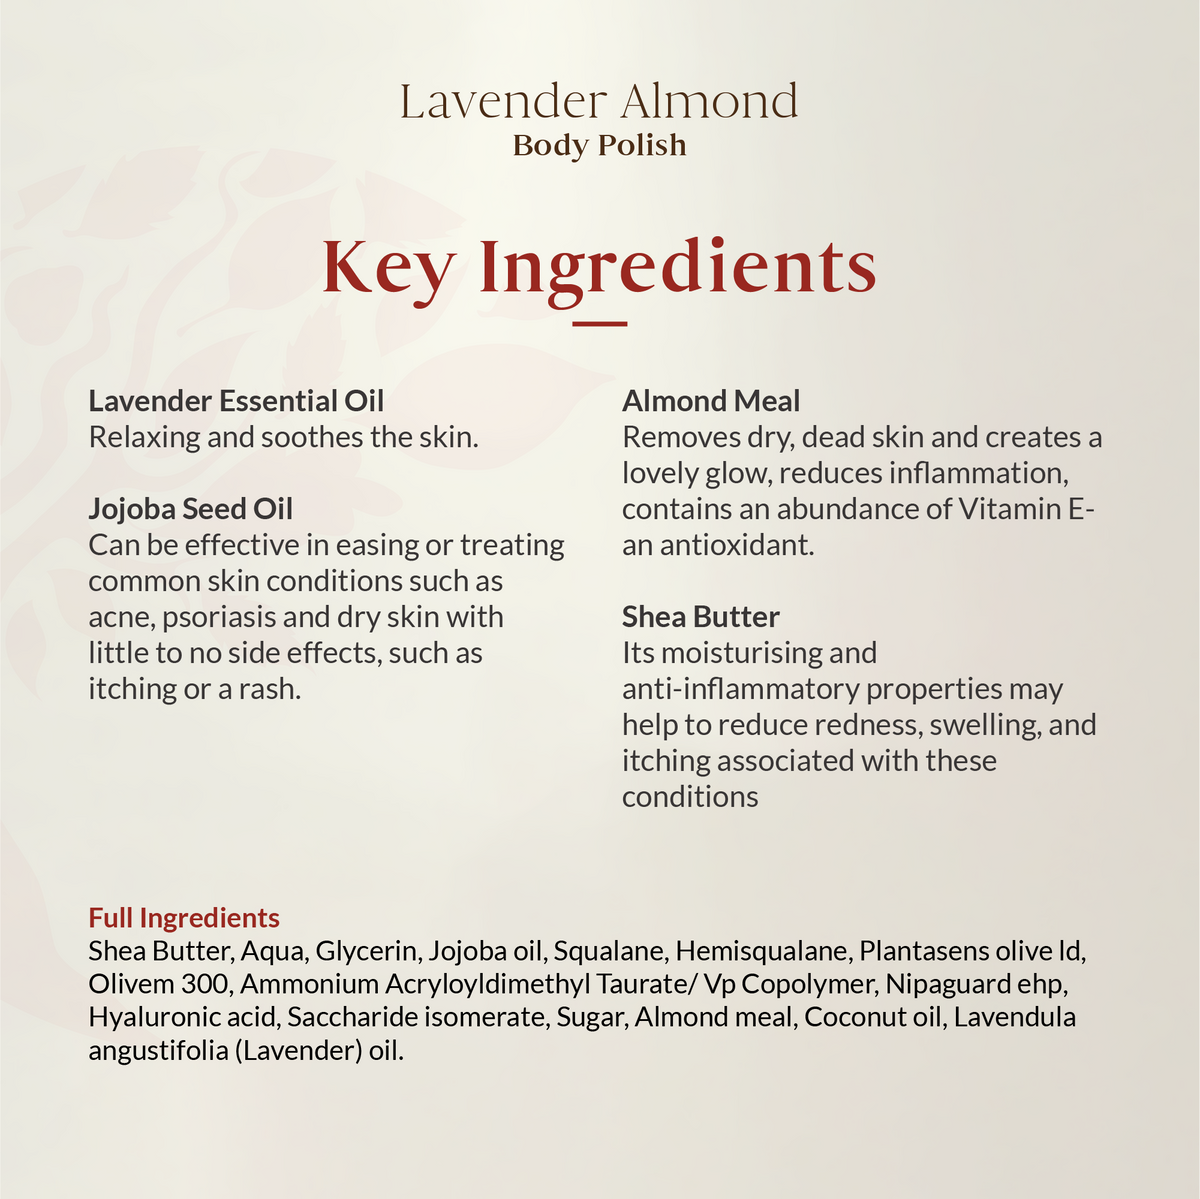 Lavender Almond Body Polish 200gm